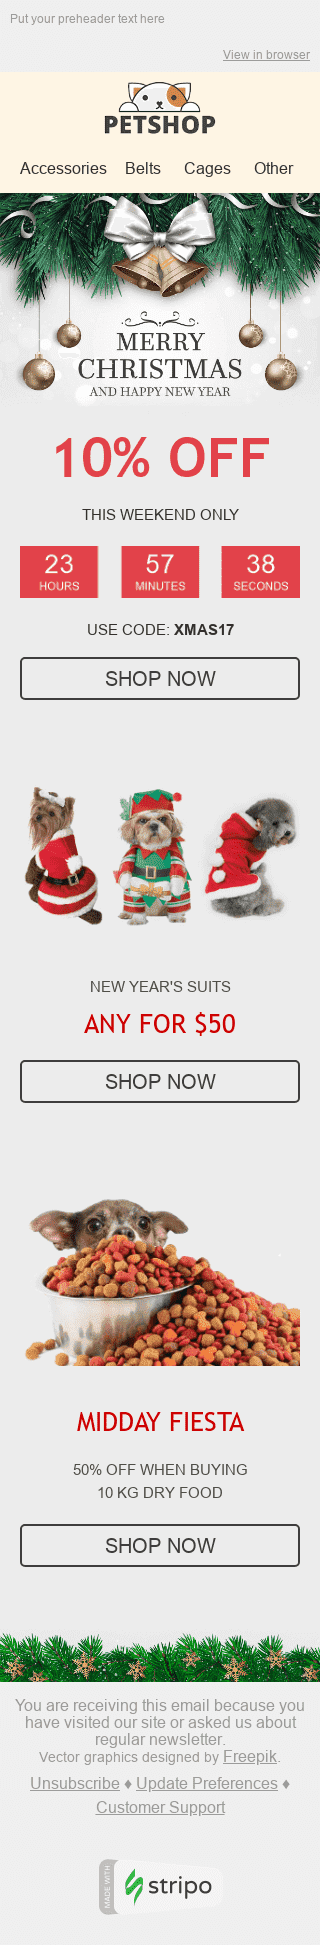 Plantilla de correo electrónico "Espíritu festivo" de Navidad para la industria de Mascotas Vista de móvil